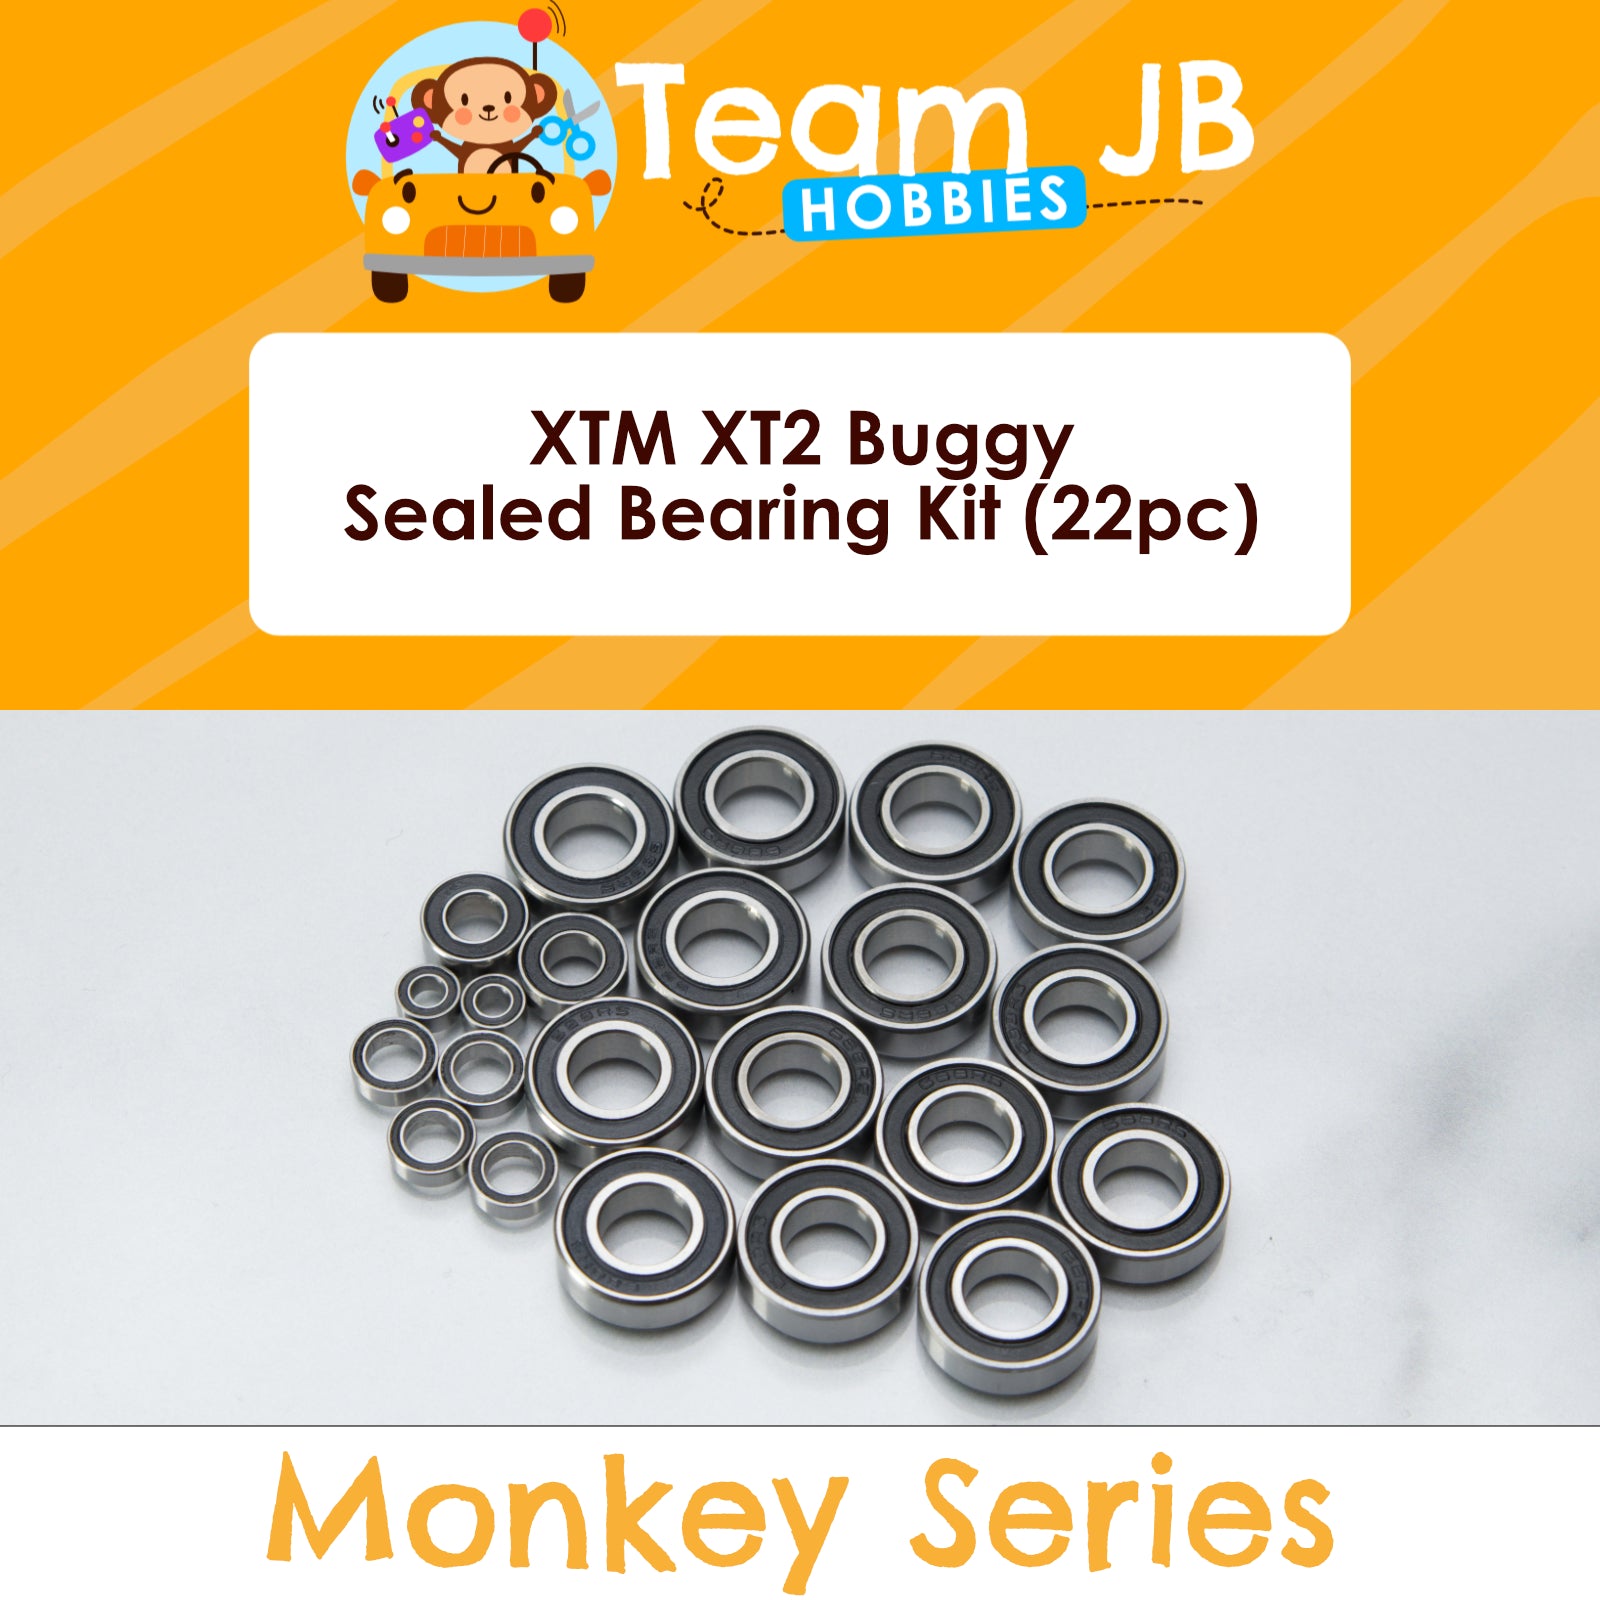 XTM XT2 Buggy - Sealed Bearing Kit